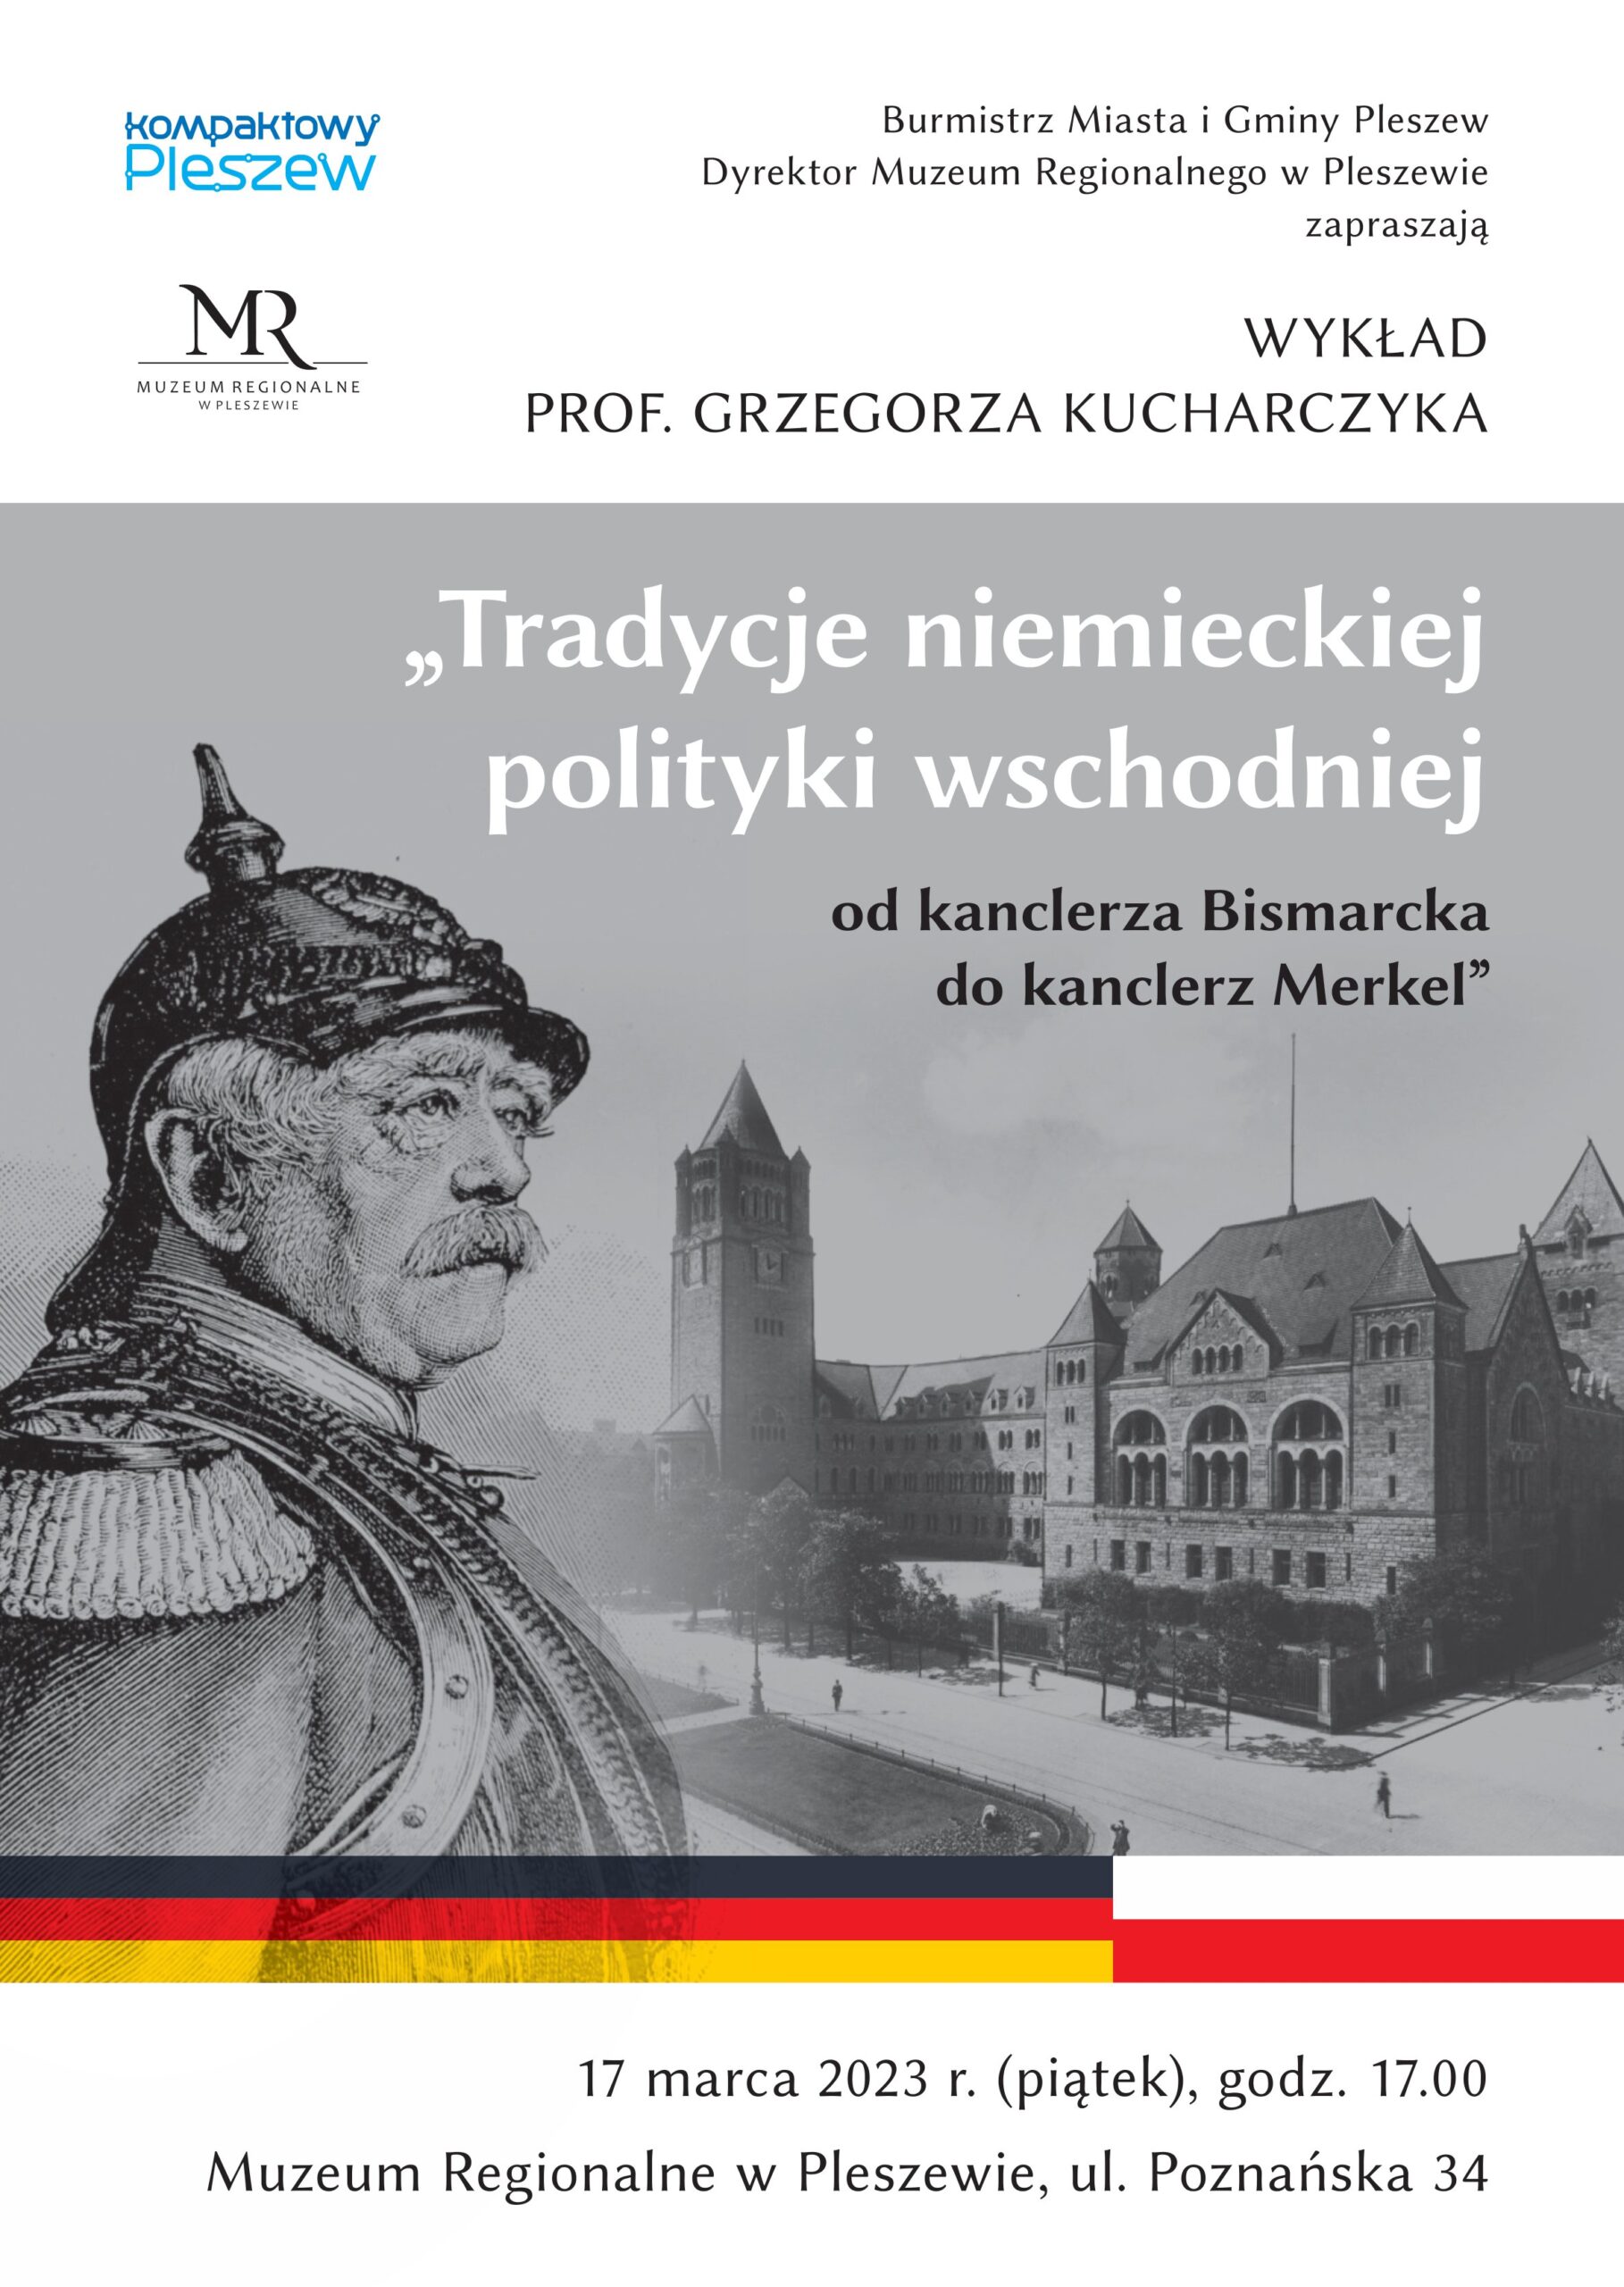 Plakat wykładu "Tradycje niemieckiej polityki wschodniej - od kanclerza Bismarcka do kanclerz Merkel" odbywającego się w Muzeum Regionalnym w Pleszewie 17 marca 2023 roku o godzinie 17:00.